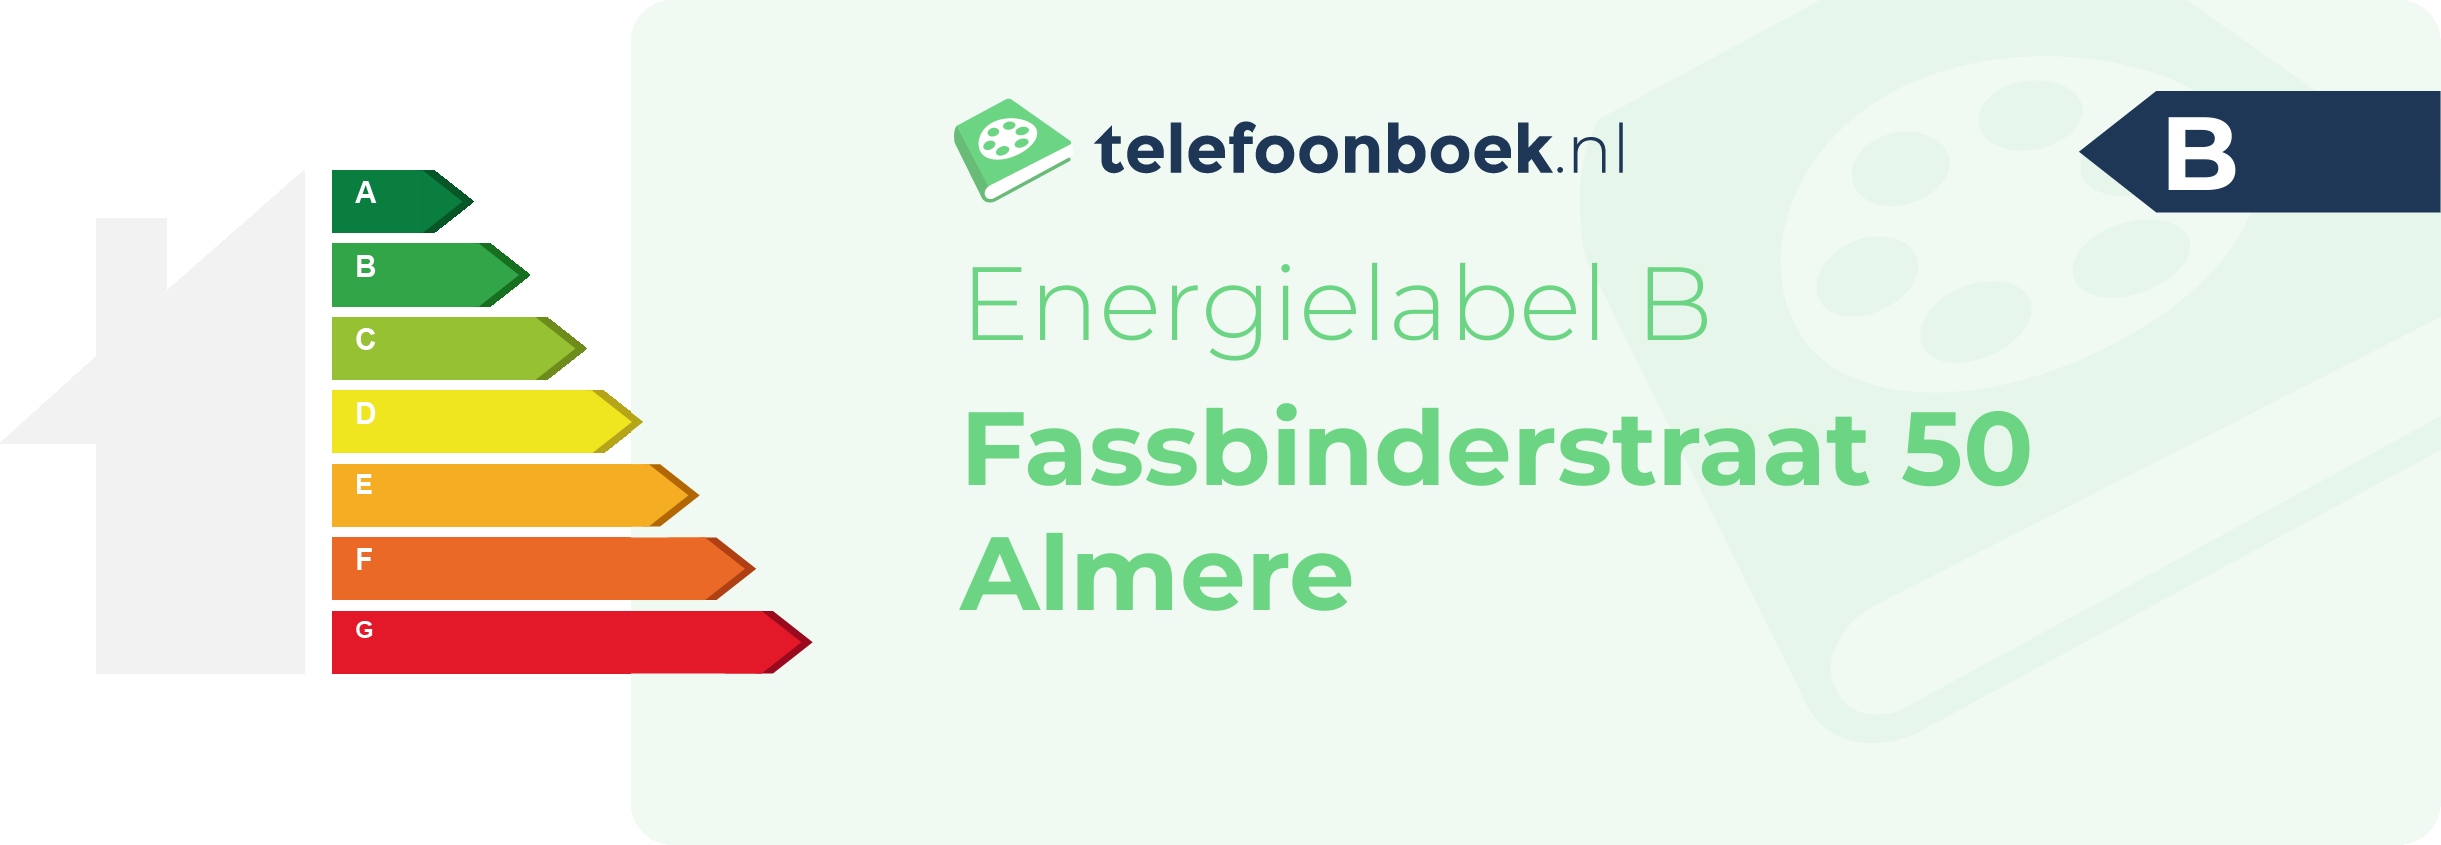 Energielabel Fassbinderstraat 50 Almere